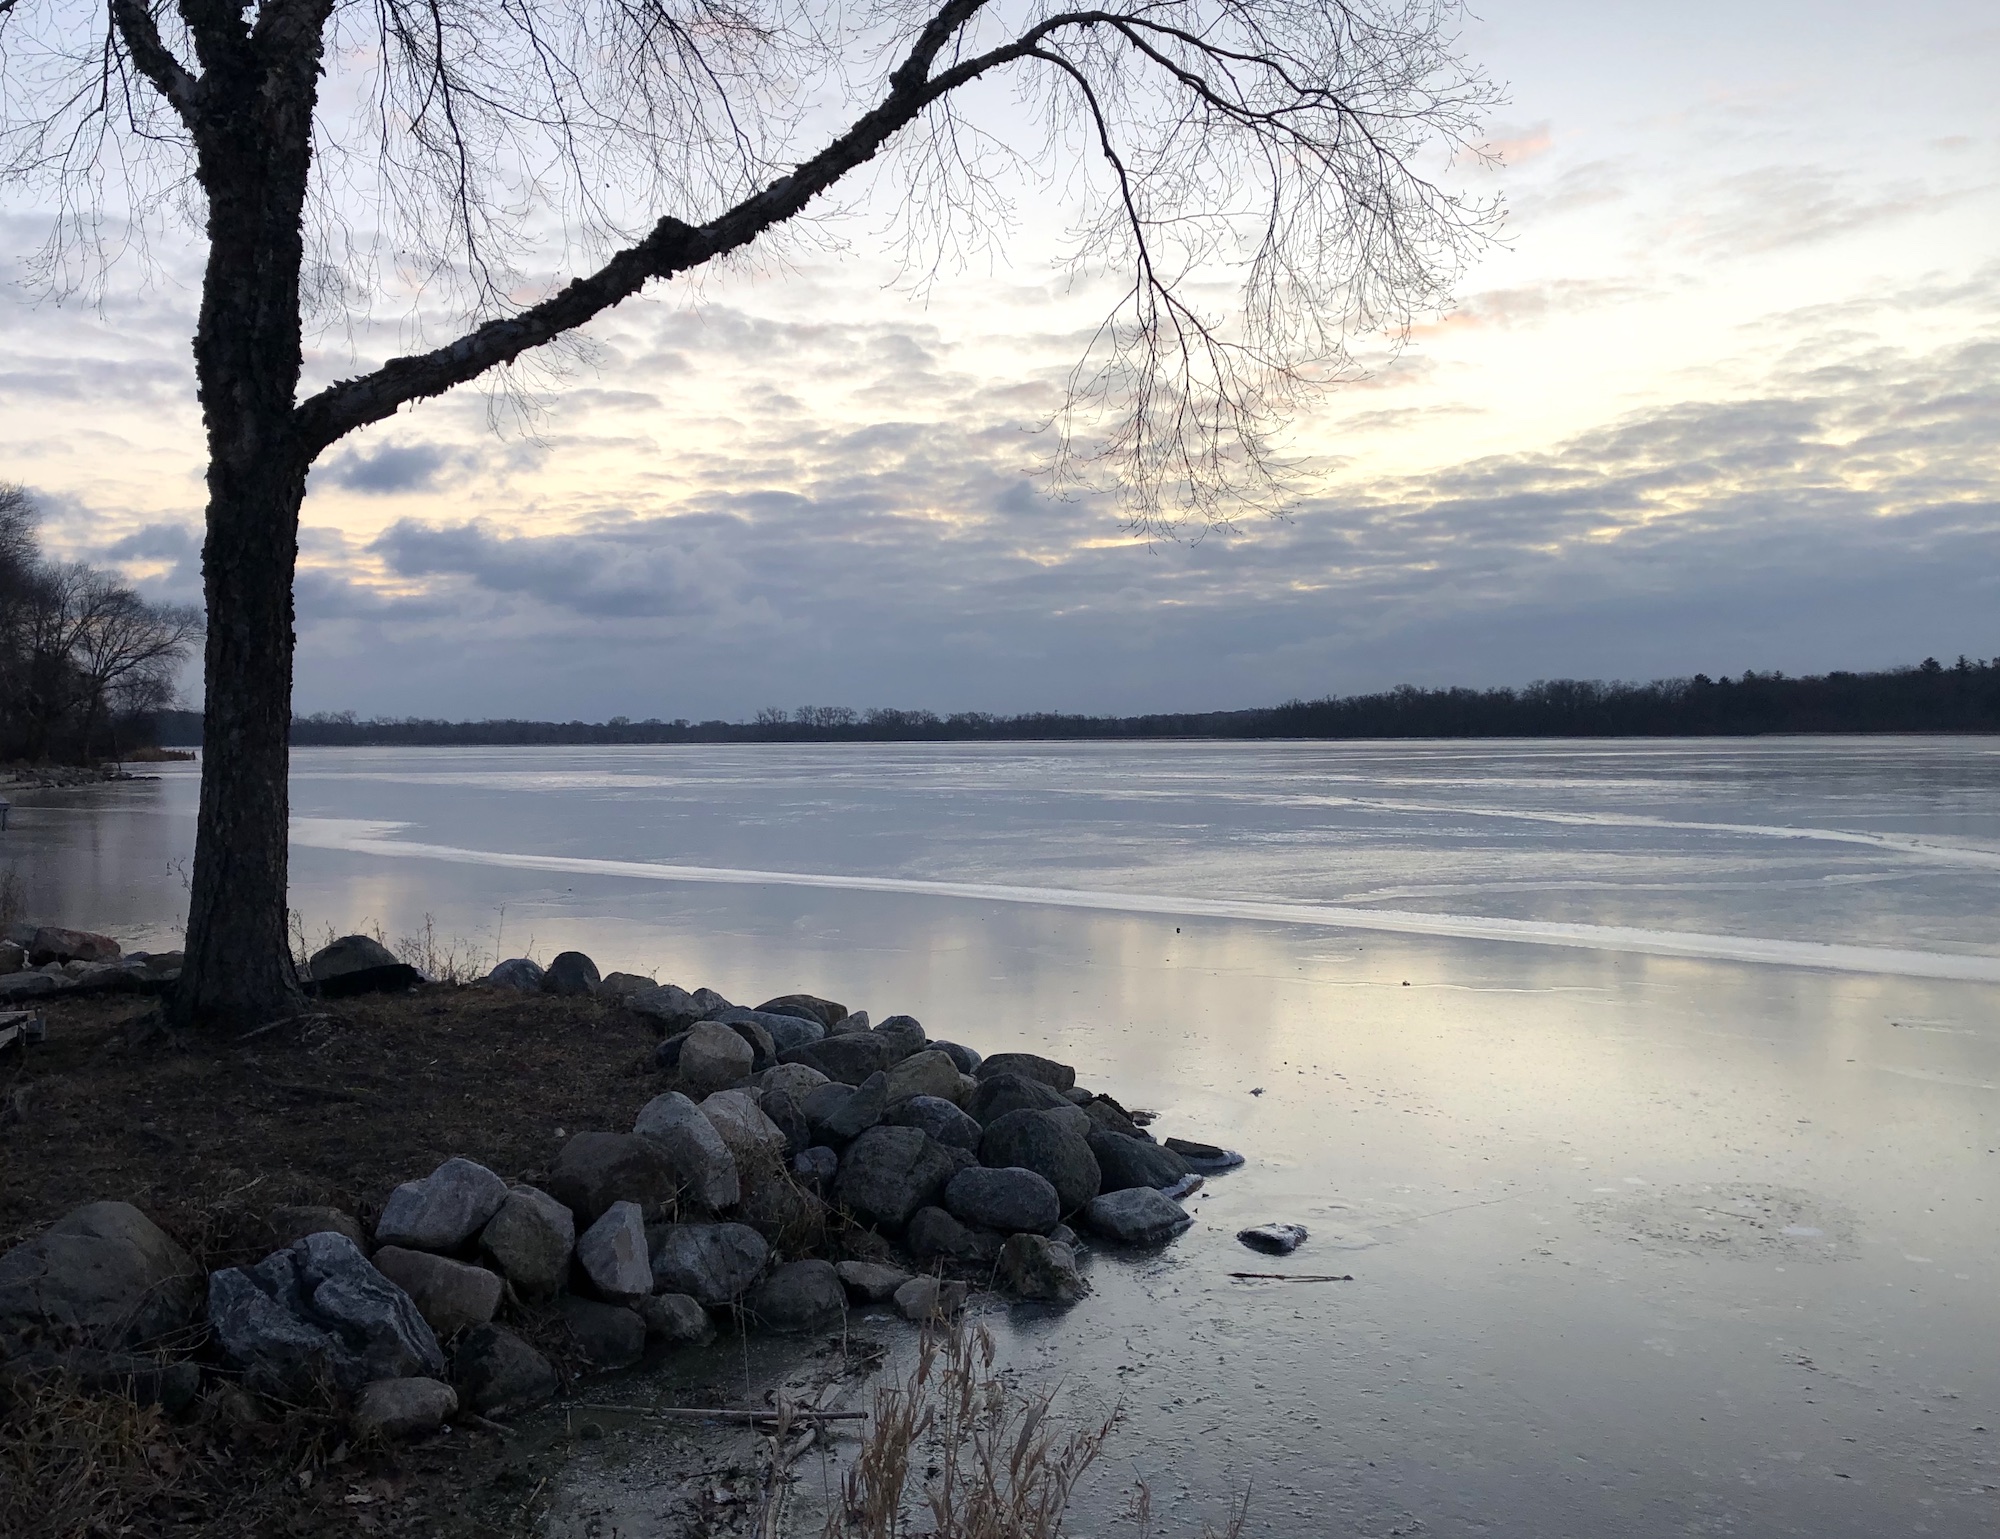 Lake Wingra on December 11, 2019.